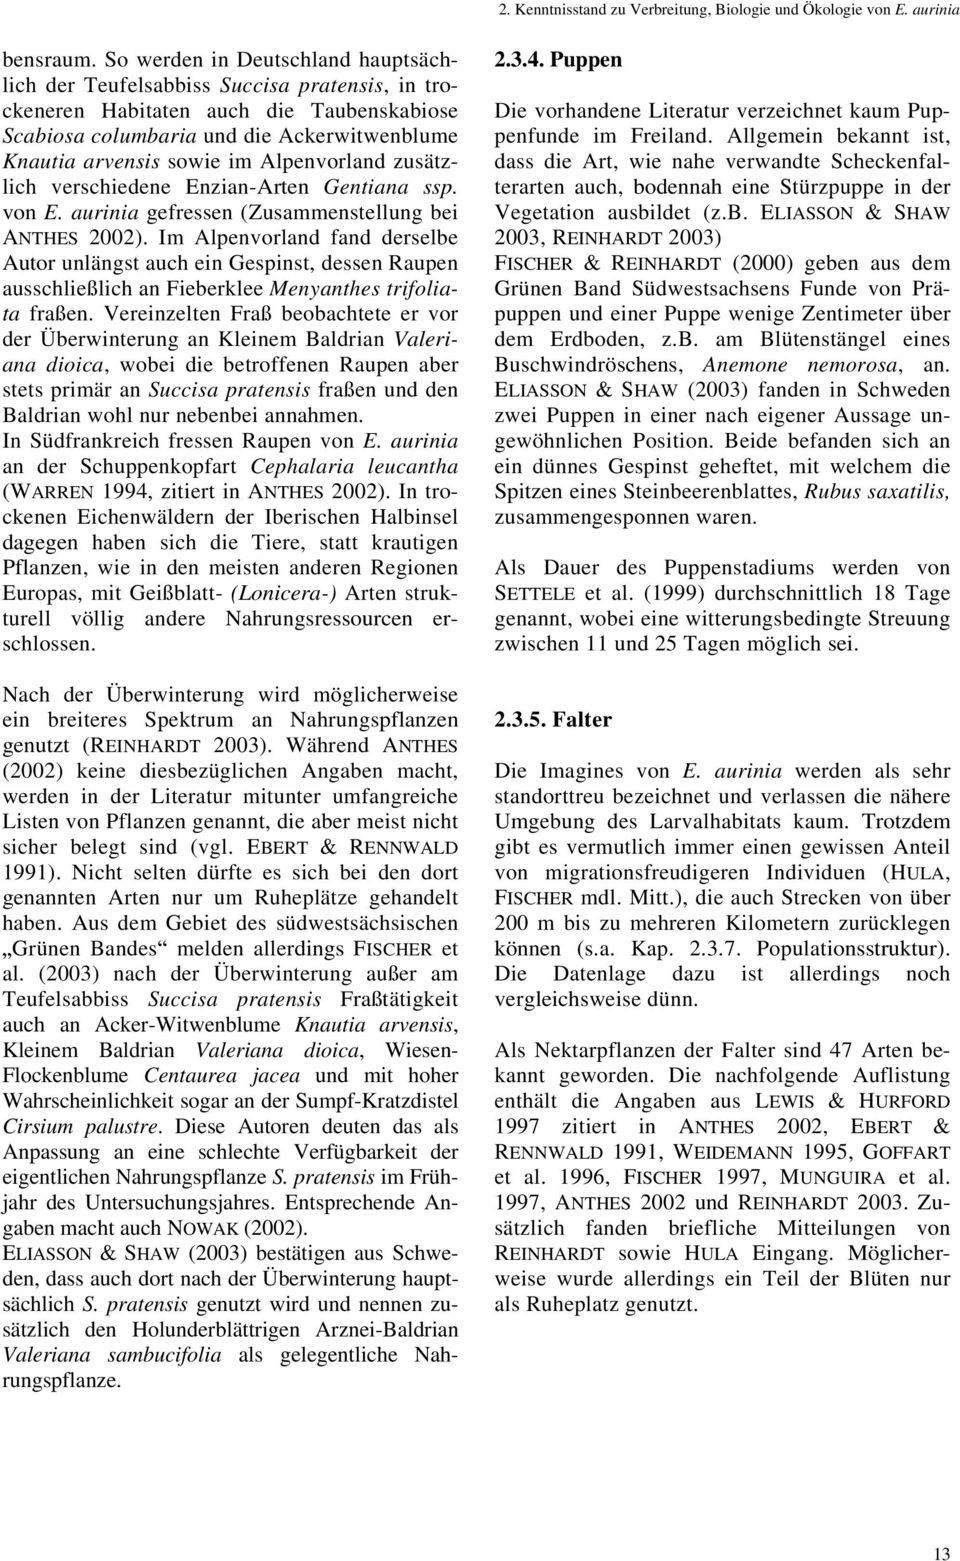 Alpenvorland zusätzlich verschiedene Enzian-Arten Gentiana ssp. von E. aurinia gefressen (Zusammenstellung bei ANTHES 2002).